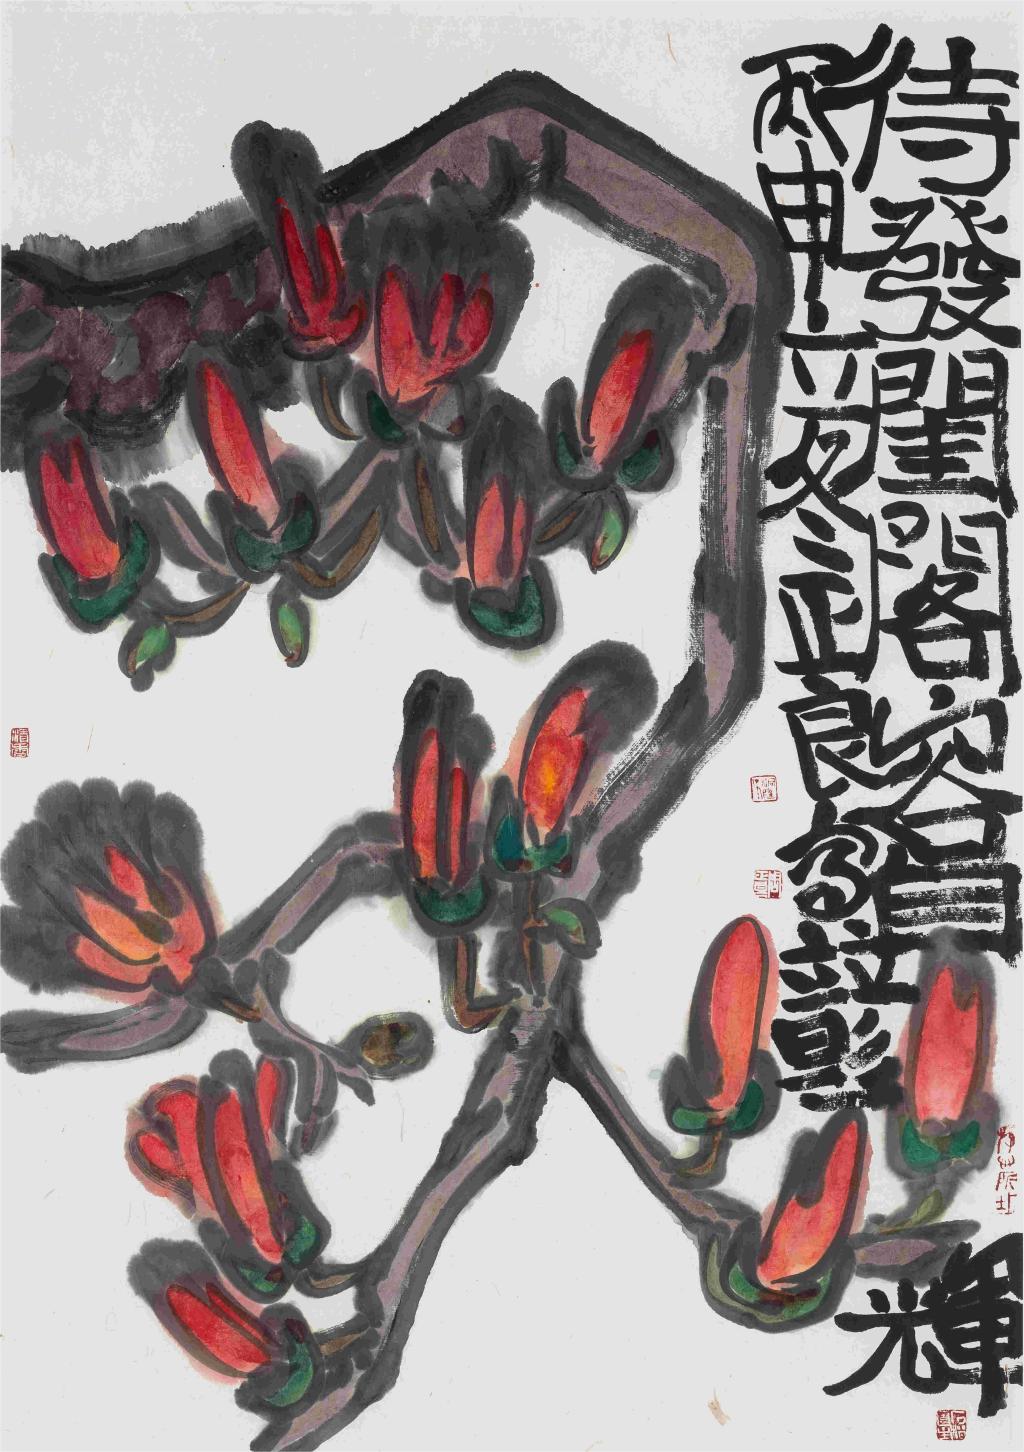 27广东画院  周正良《丽日》68x96cm 水墨纸本 2016年